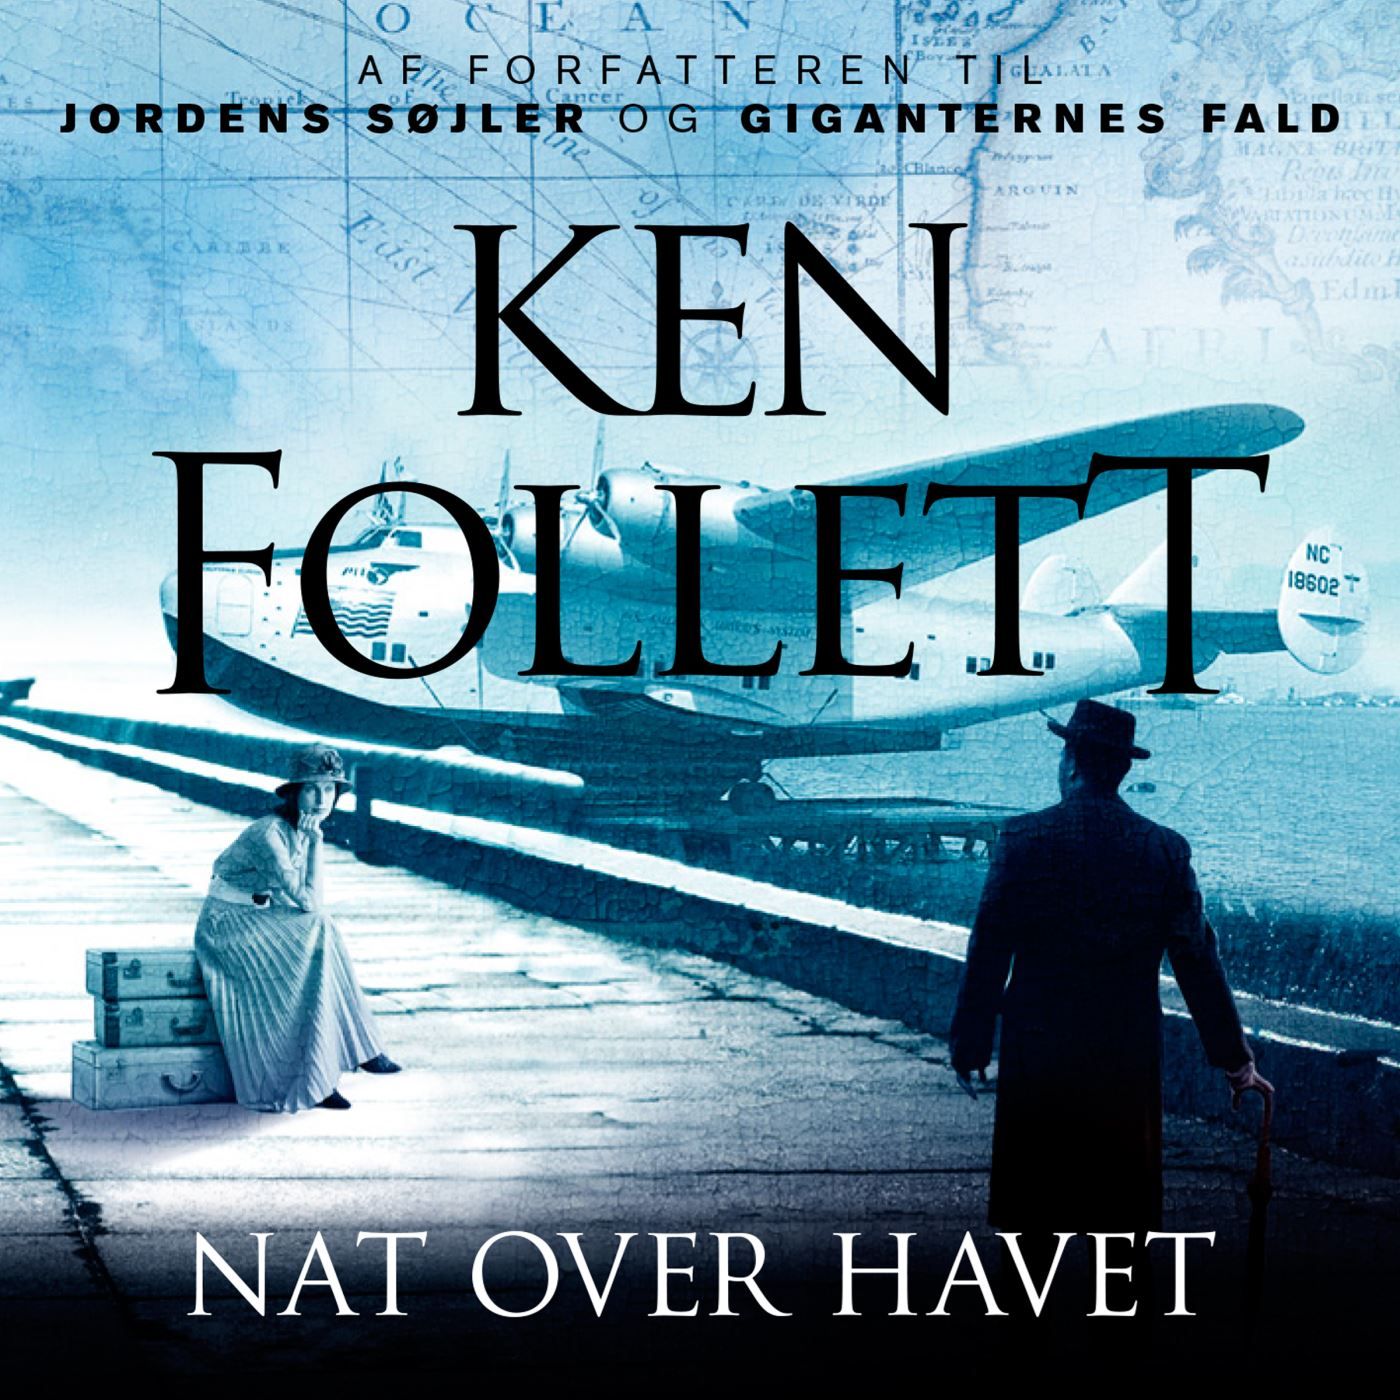 Nat over havet, ljudbok av Ken Follett